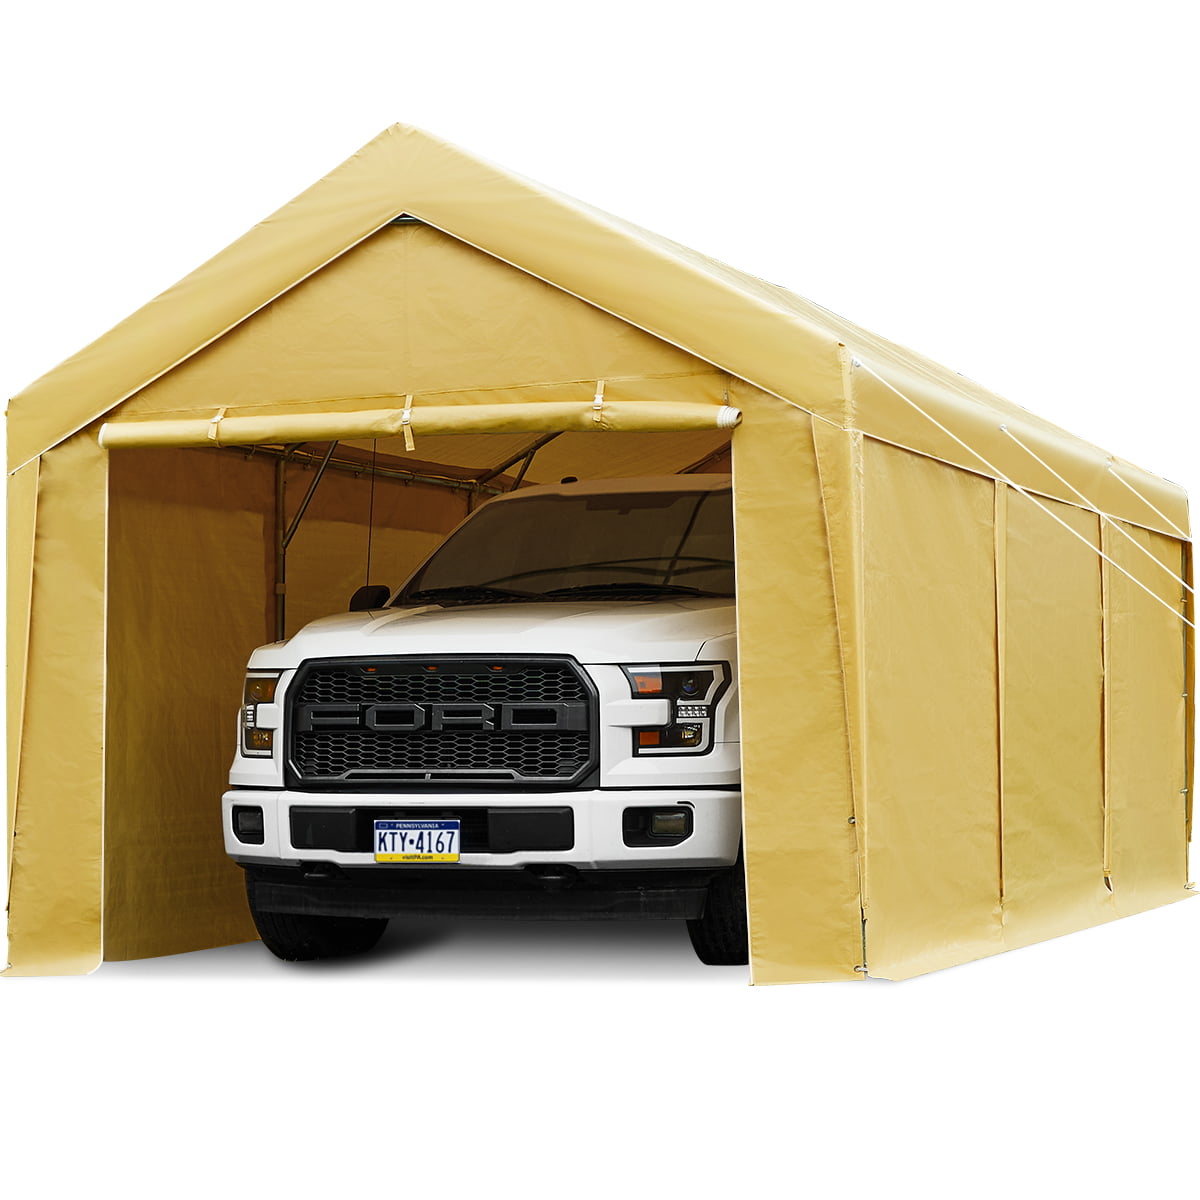 Finfree 10 X 20 Ft Steel Carport Car Canopy With Sidewall And Door 4 Sandbags Beige